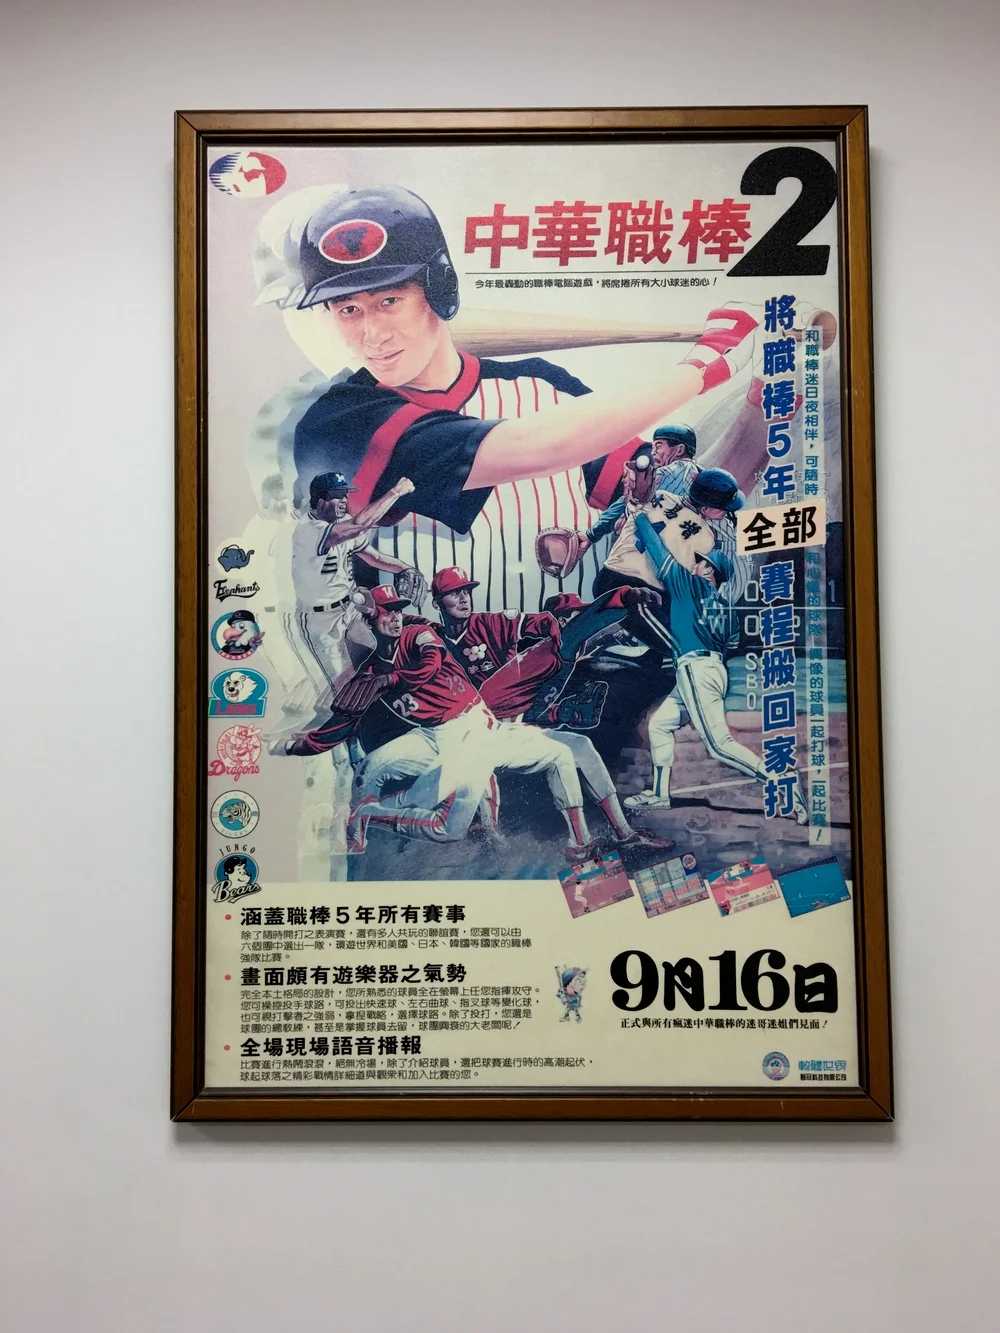 《中华职棒》游戏封面，这是徐昌隆当年参与制作的一款棒球游戏，徐大本人则是狂热棒球球迷